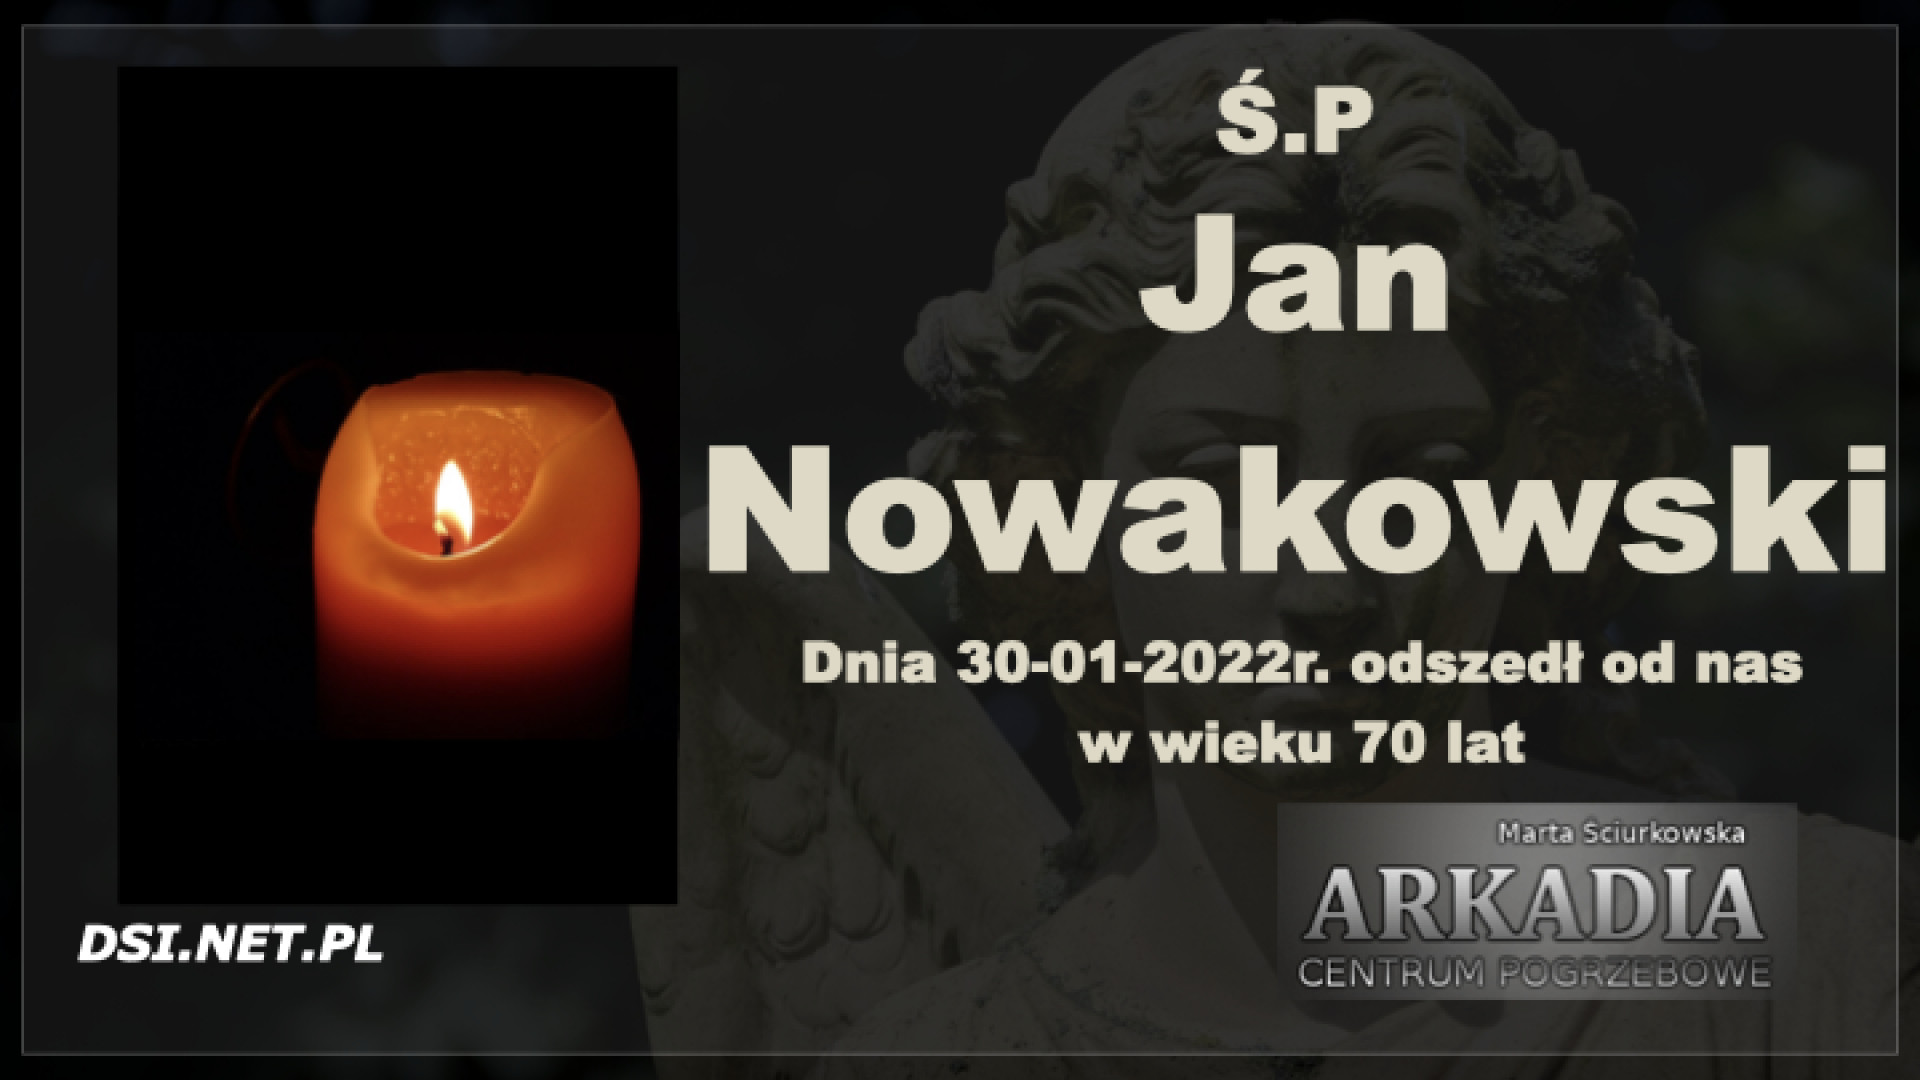 Ś.P. Jan Nowakowski